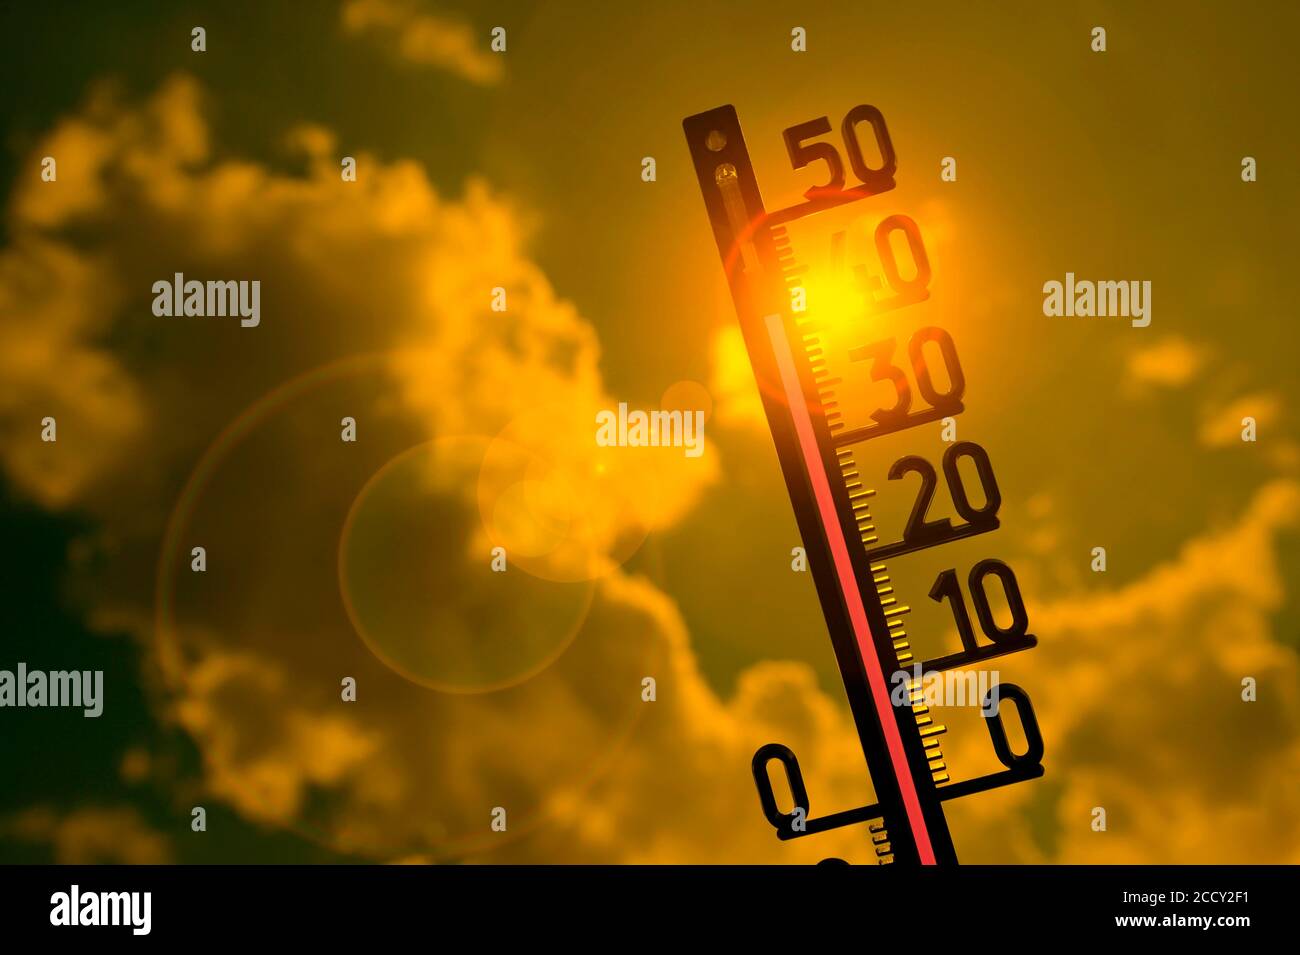 Immagine simbolo onda di calore, termometro al sole, 41 gradi Celsius, Baden-Wuerttemberg, Germania Foto Stock